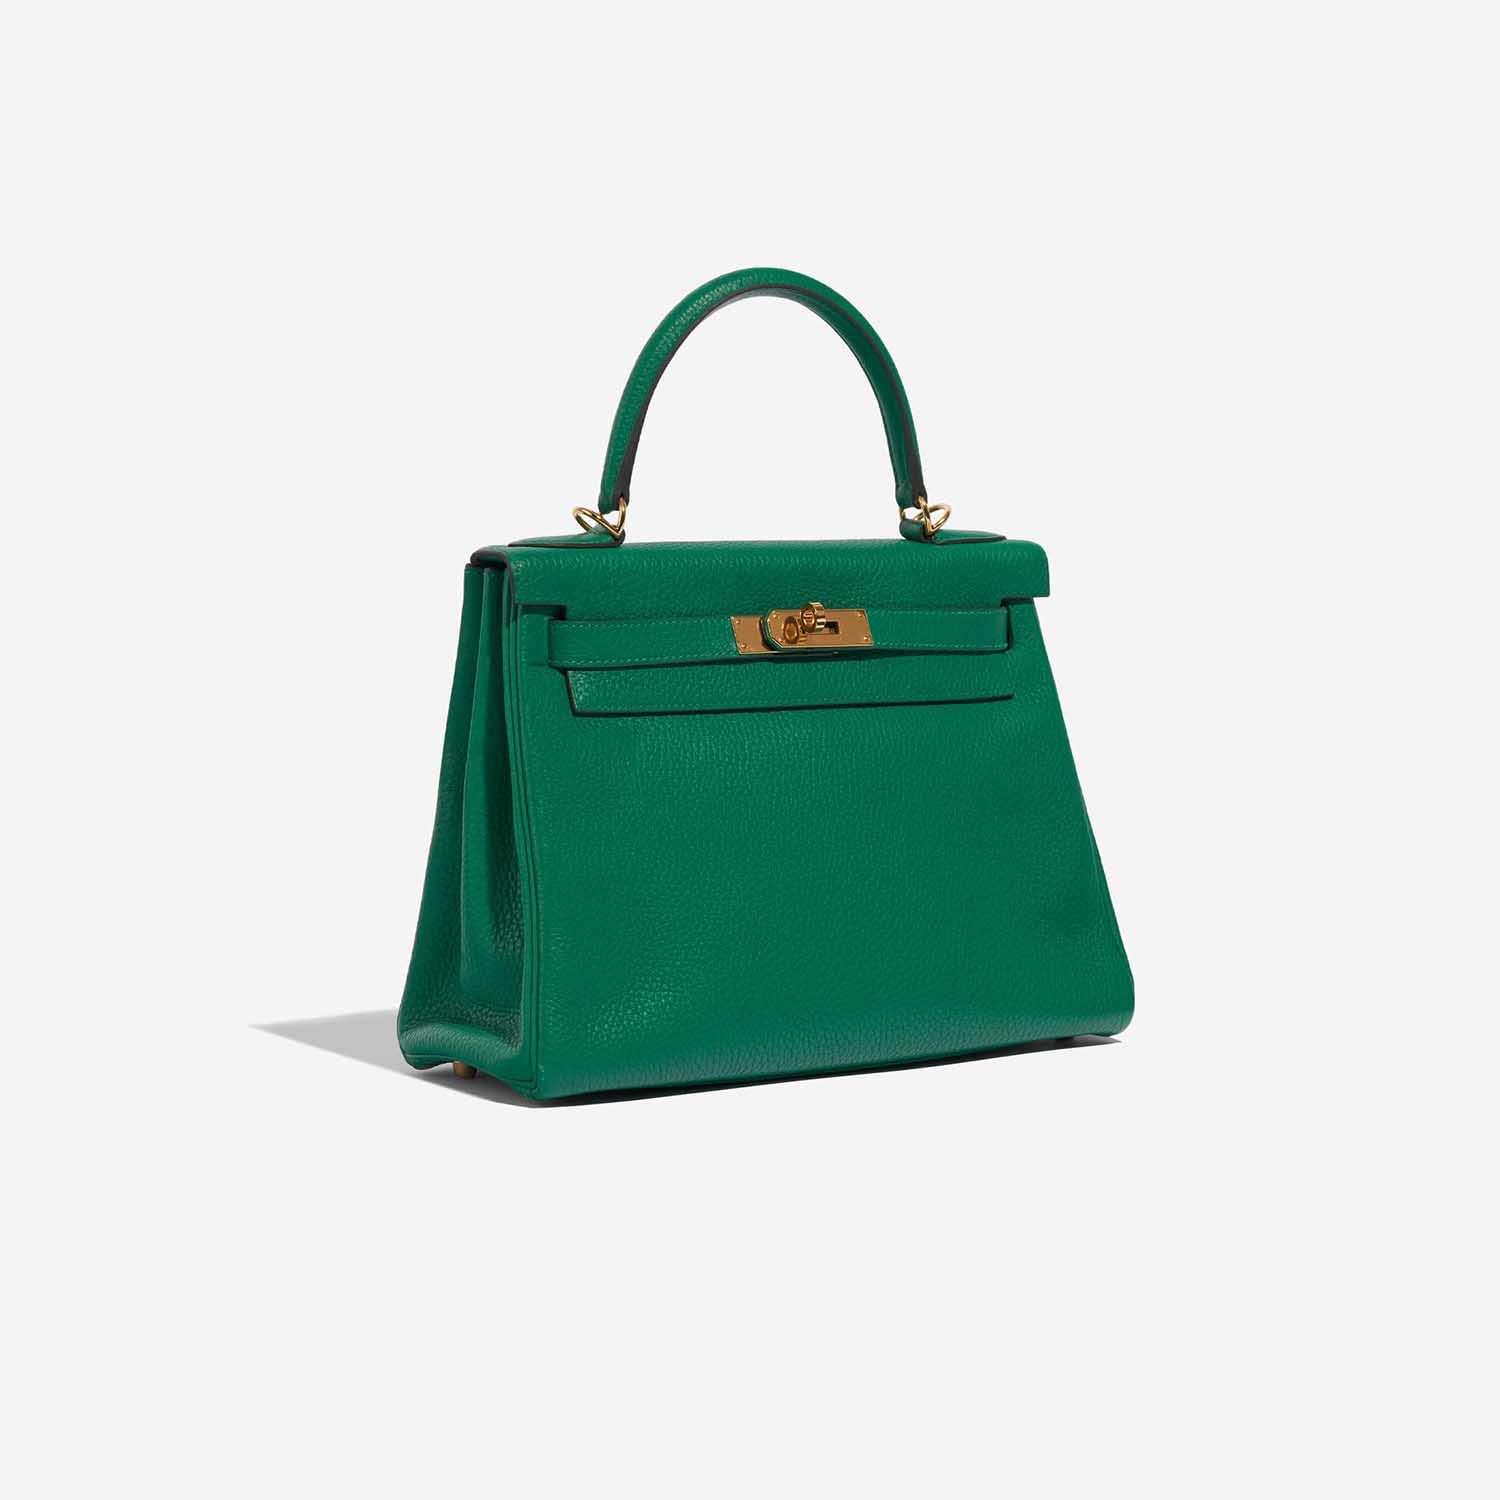 Pre-owned Hermès Tasche Kelly 28 Togo Vert Menthe Grün Side Front | Verkaufen Sie Ihre Designer-Tasche auf Saclab.com